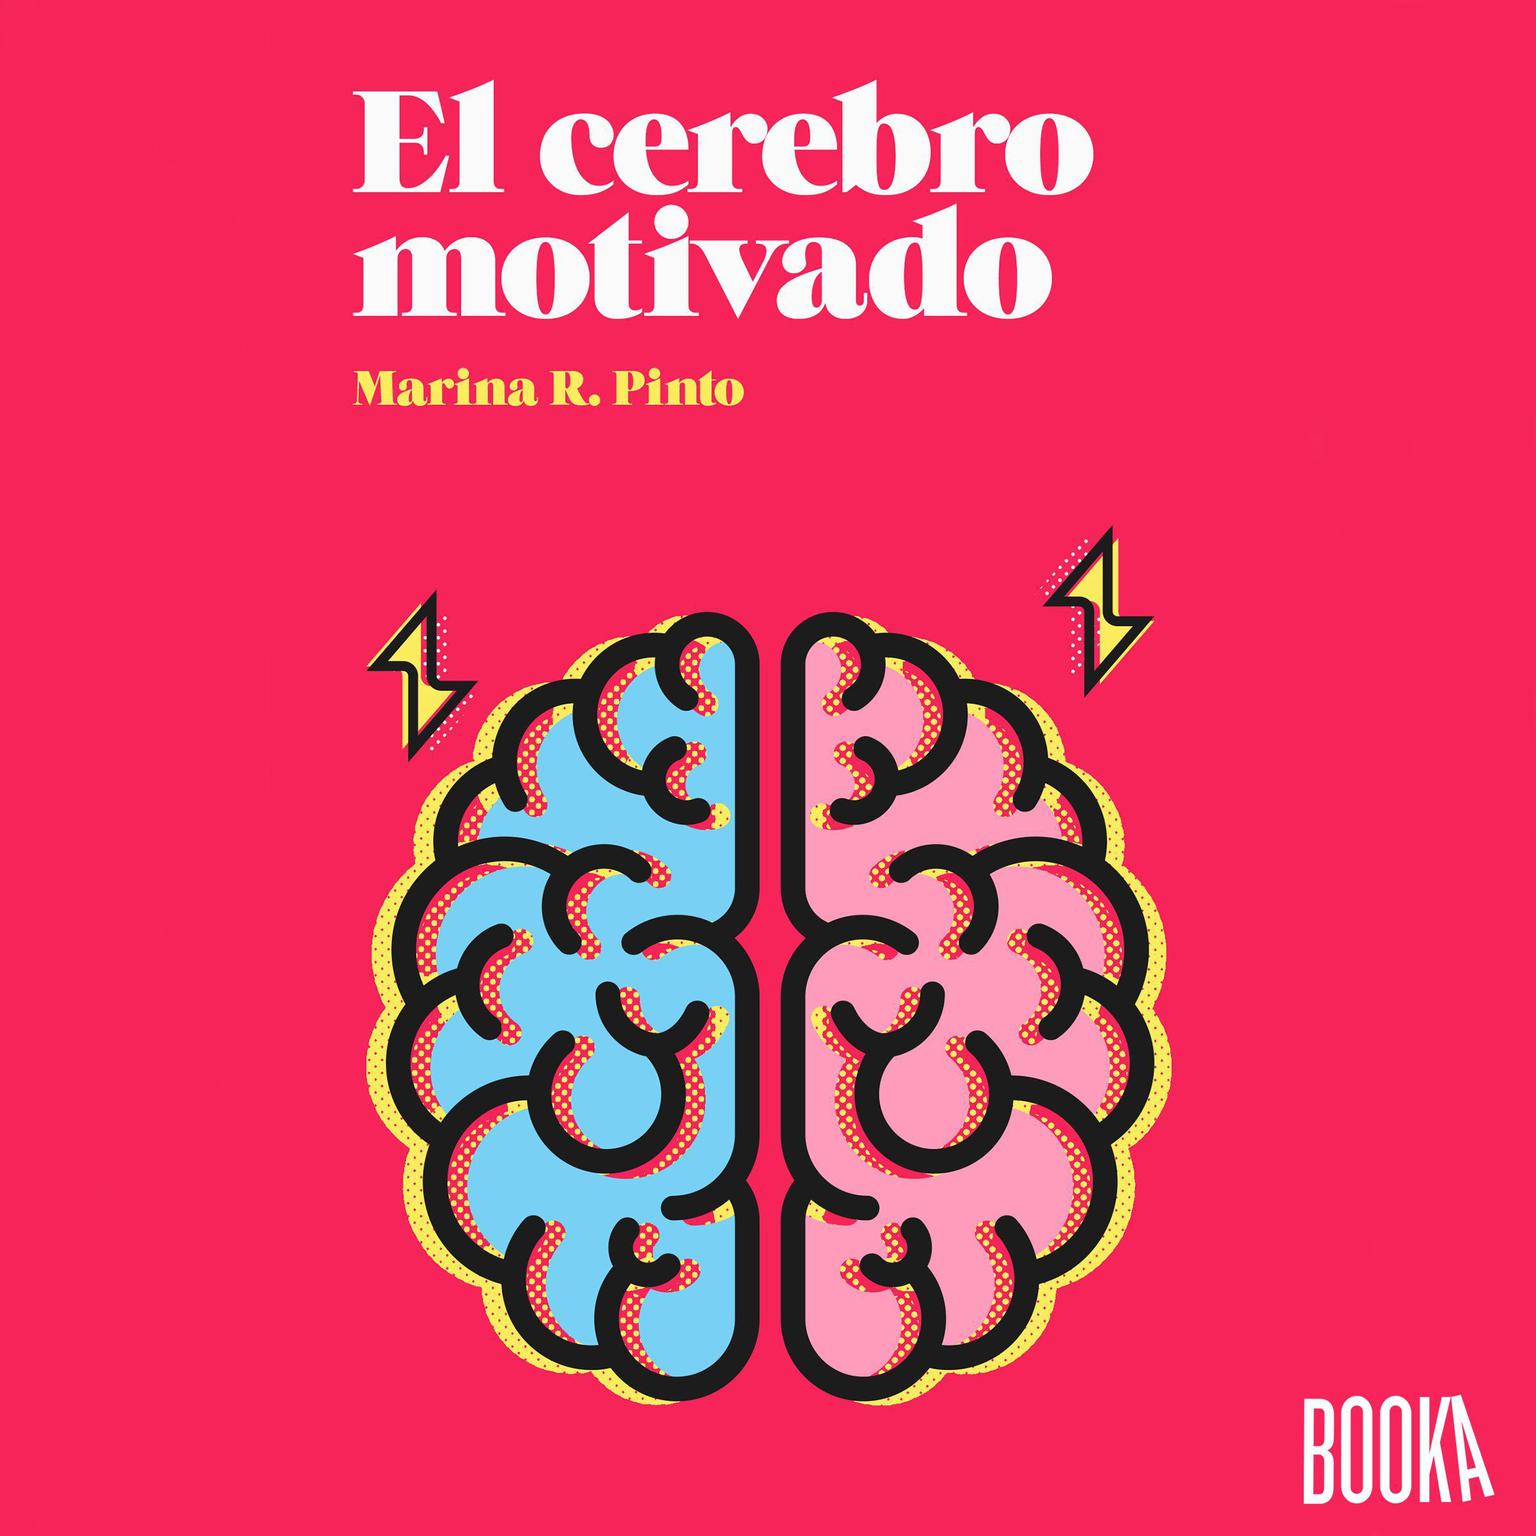 El cerebro motivado Audiobook, by Marina R. Pinto